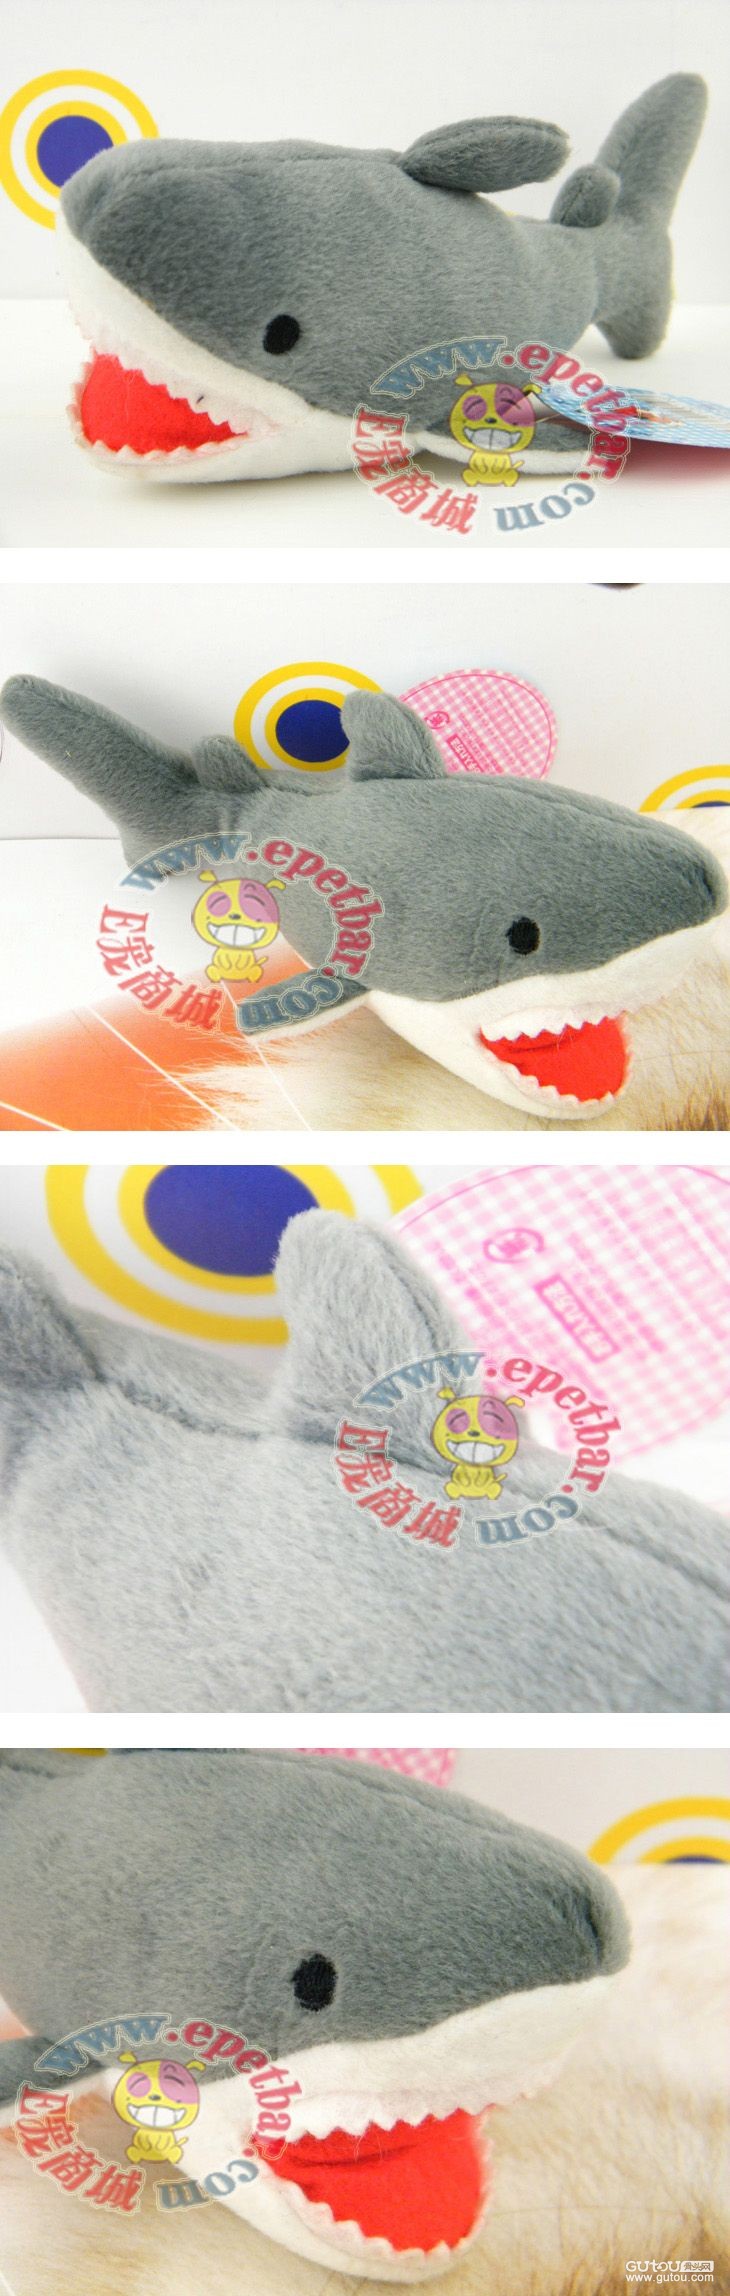 宠物商城狗狗用品网为你的爱宠提供:日本AiBaoPet 棉绒发声宠物玩具——小鲨鱼